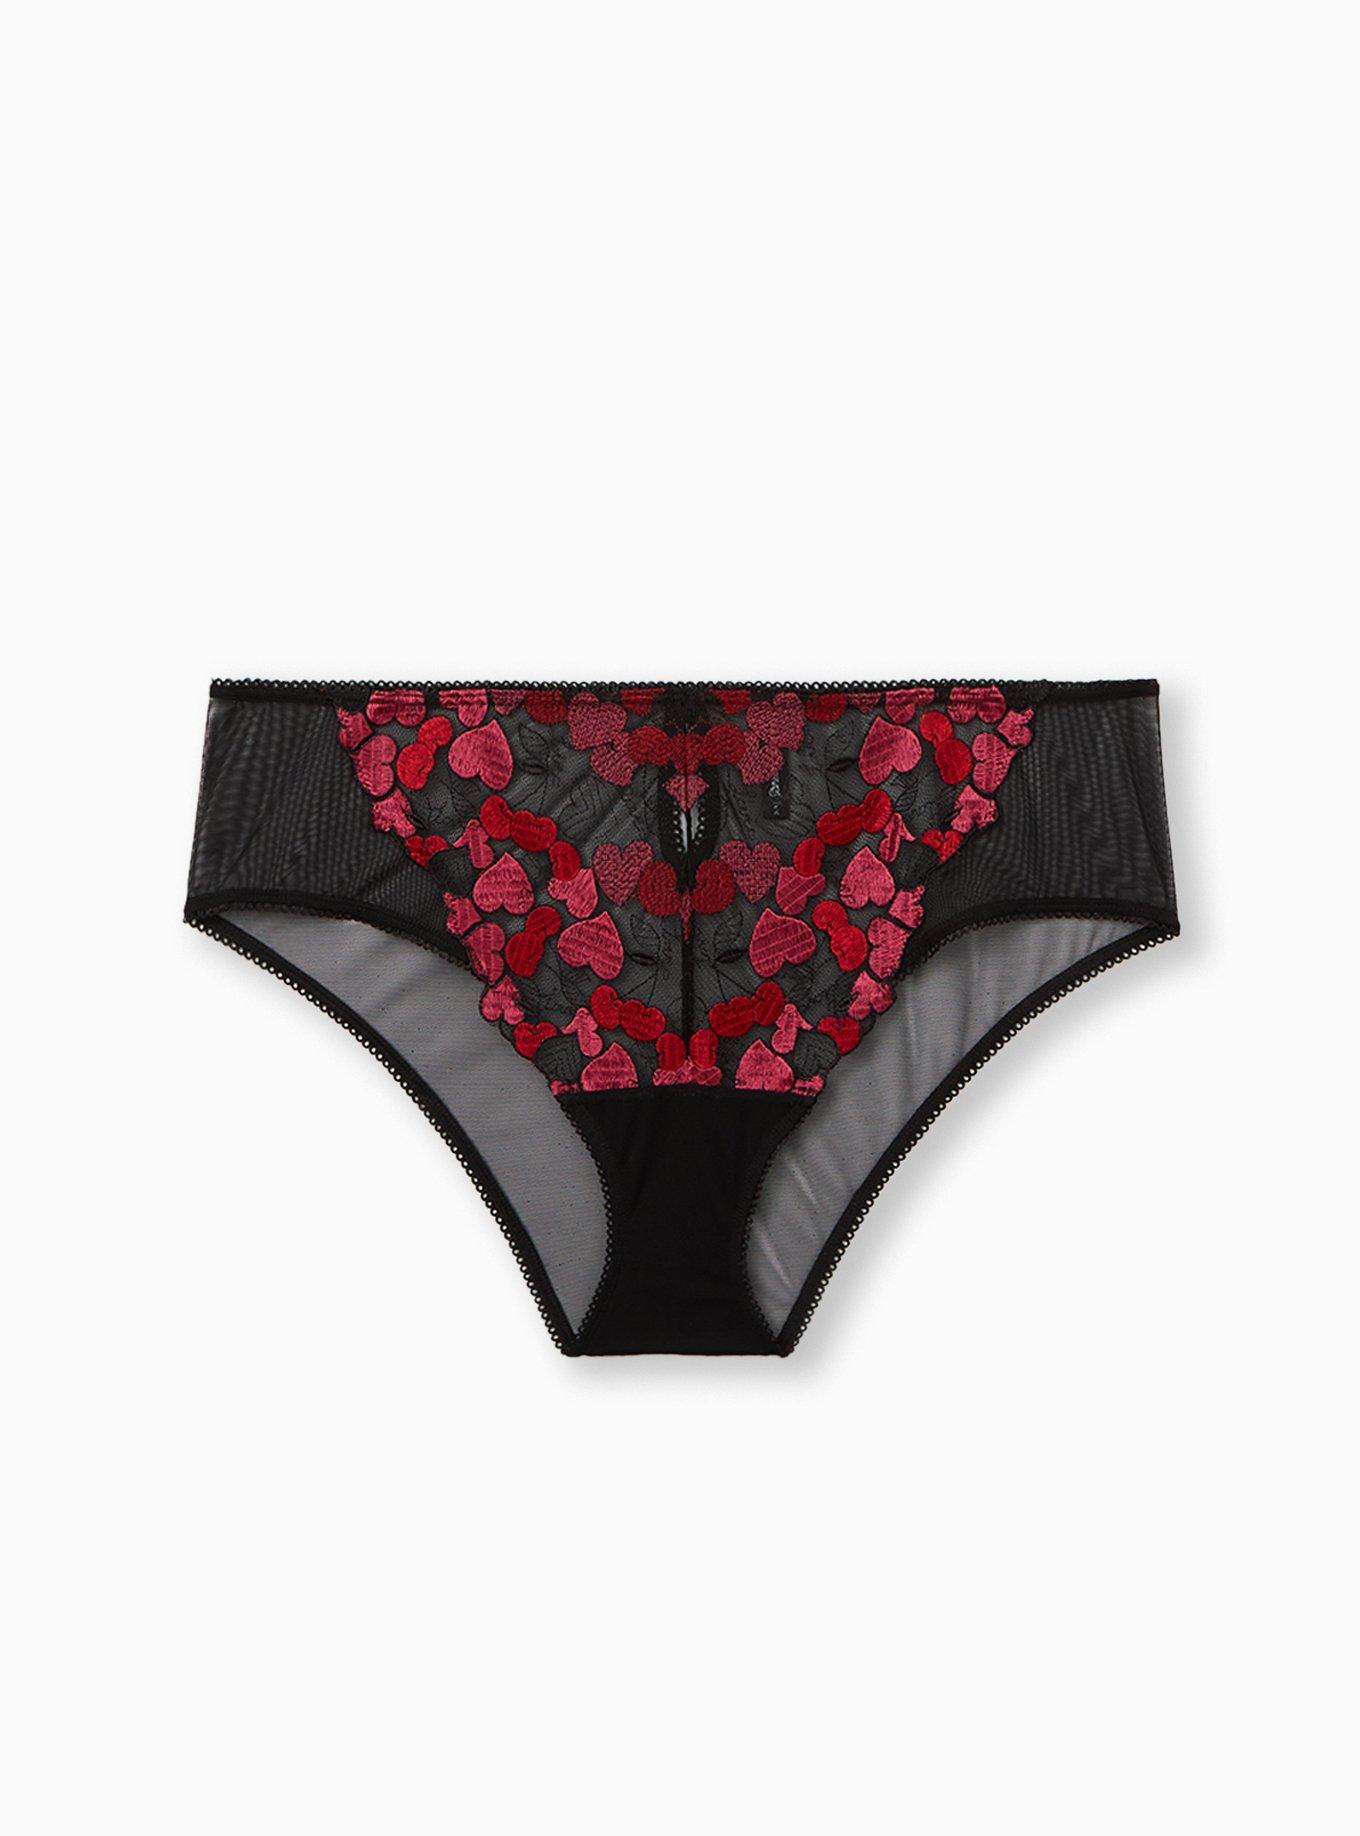 Plus Size - Black & Pink Heart Embroidered Back Slit Hipster Panty - Torrid